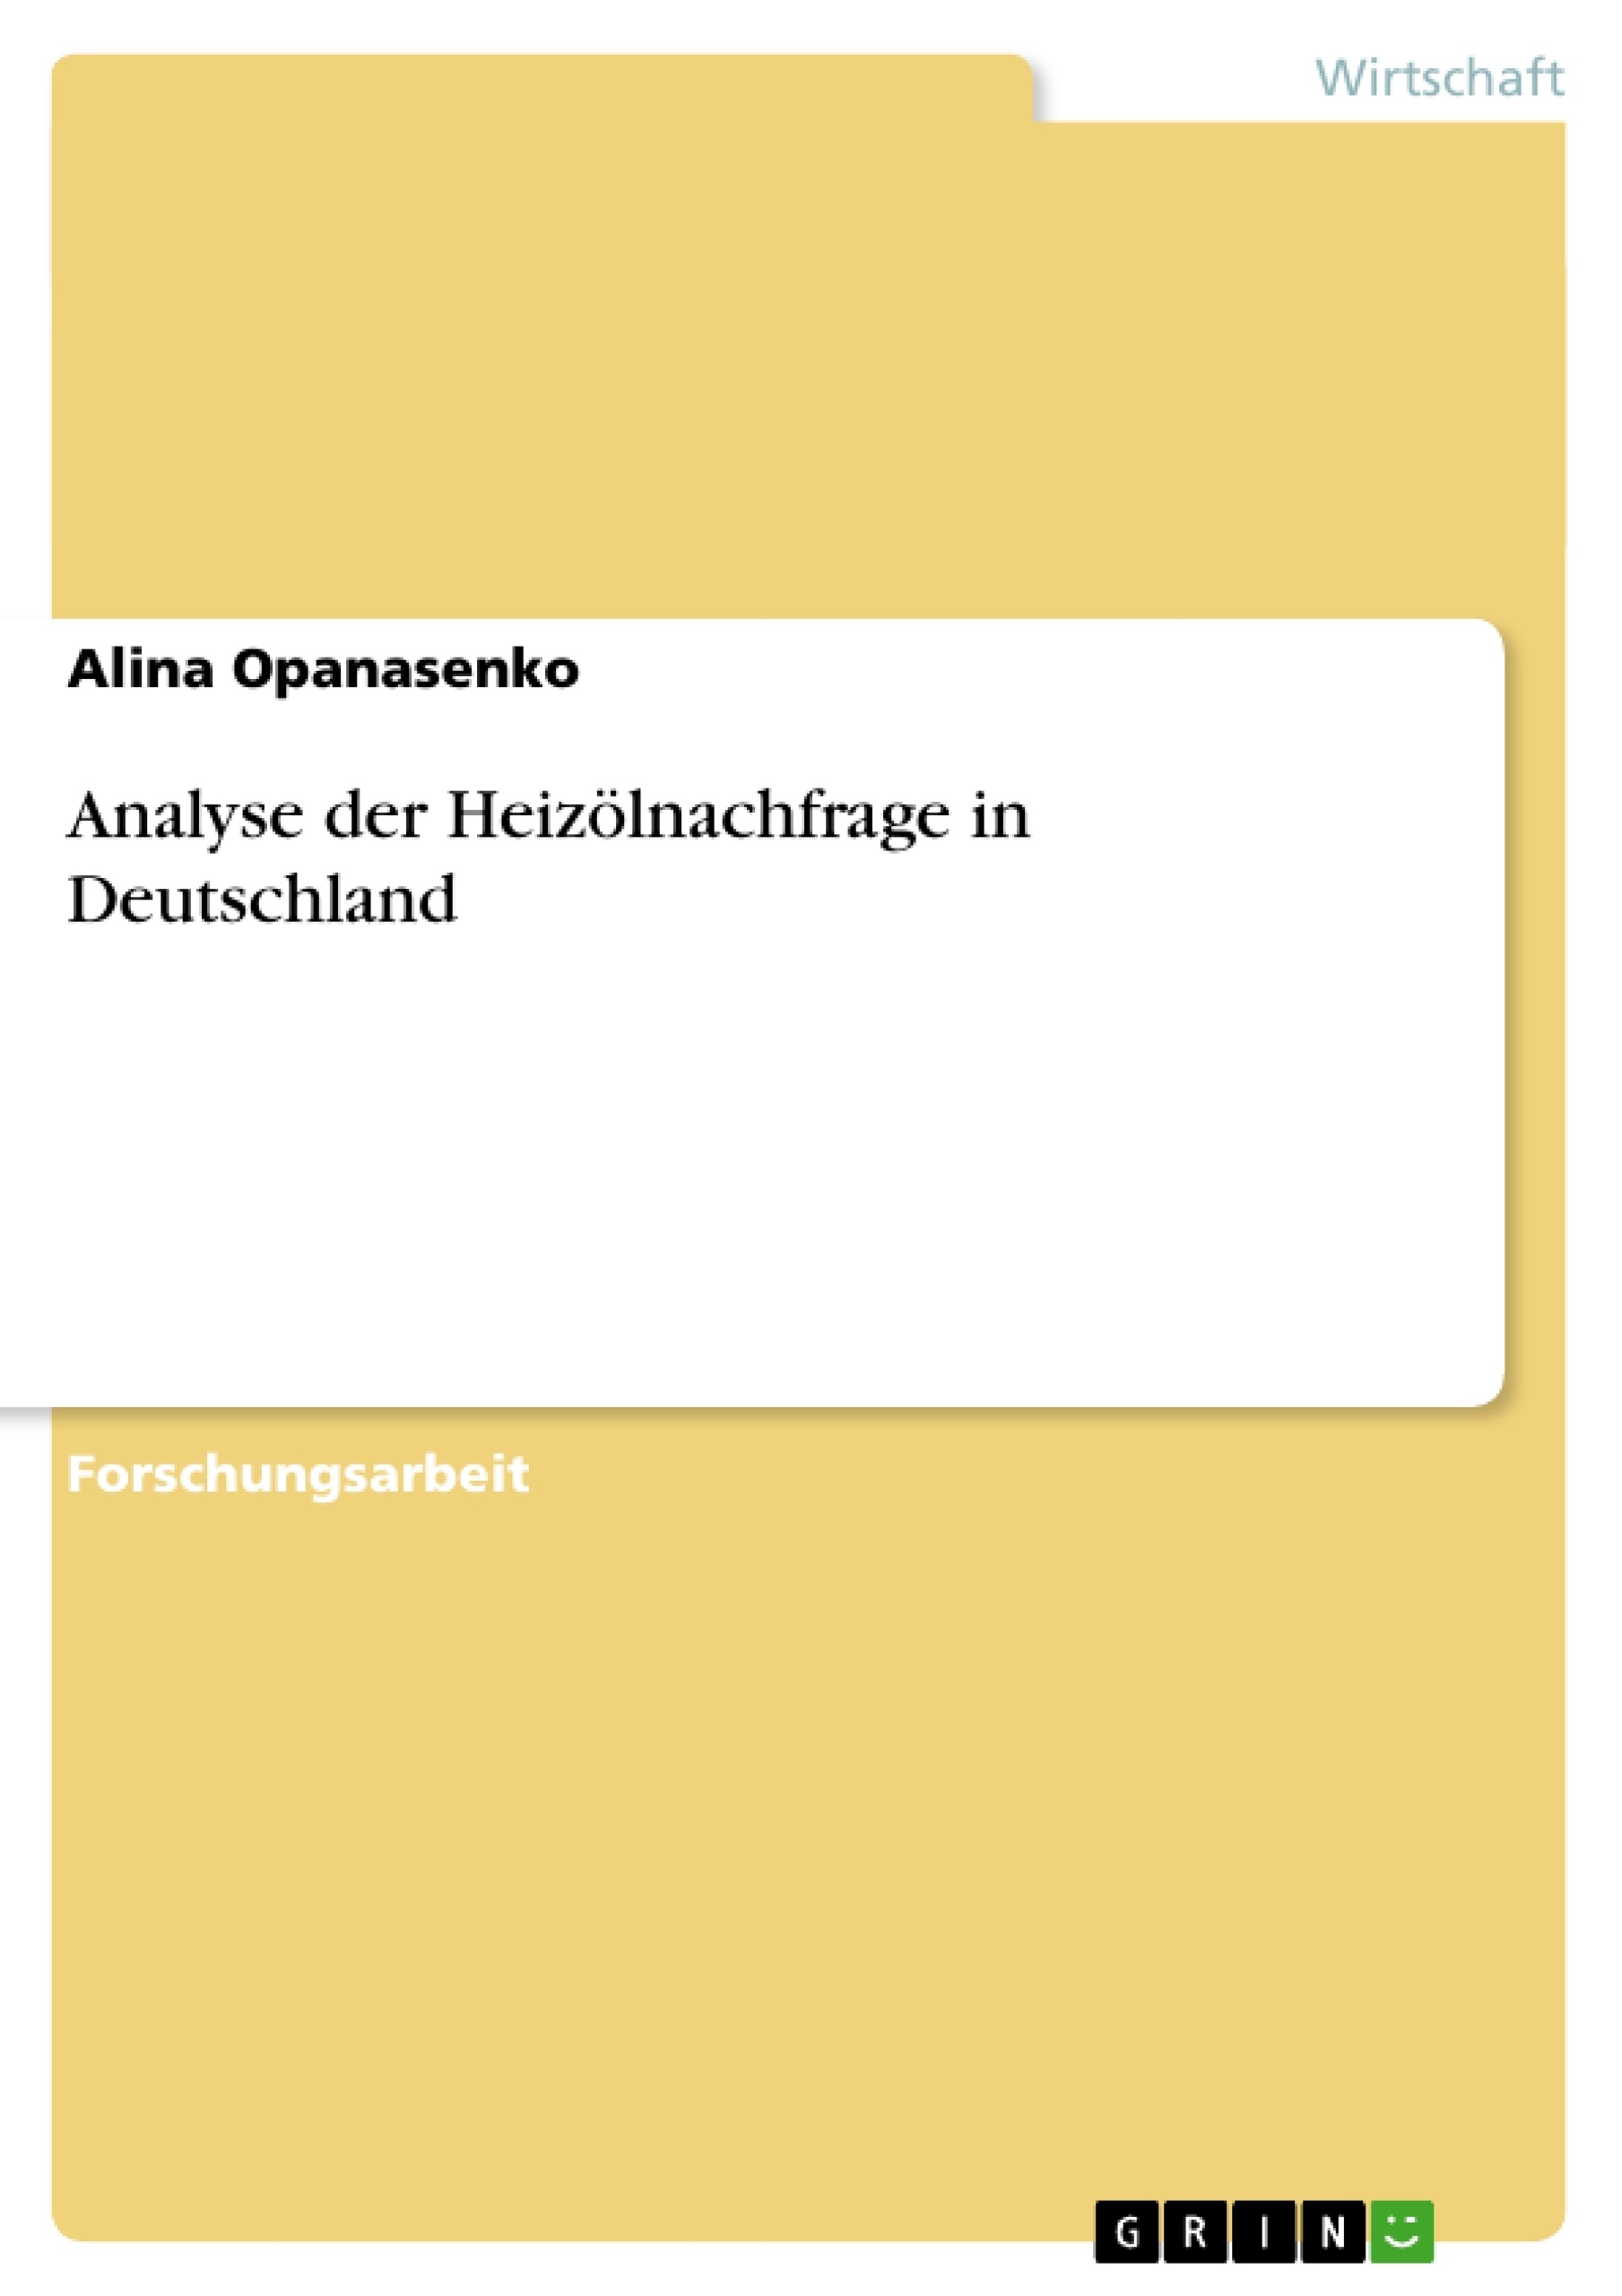 Titre: Analyse der Heizölnachfrage in Deutschland